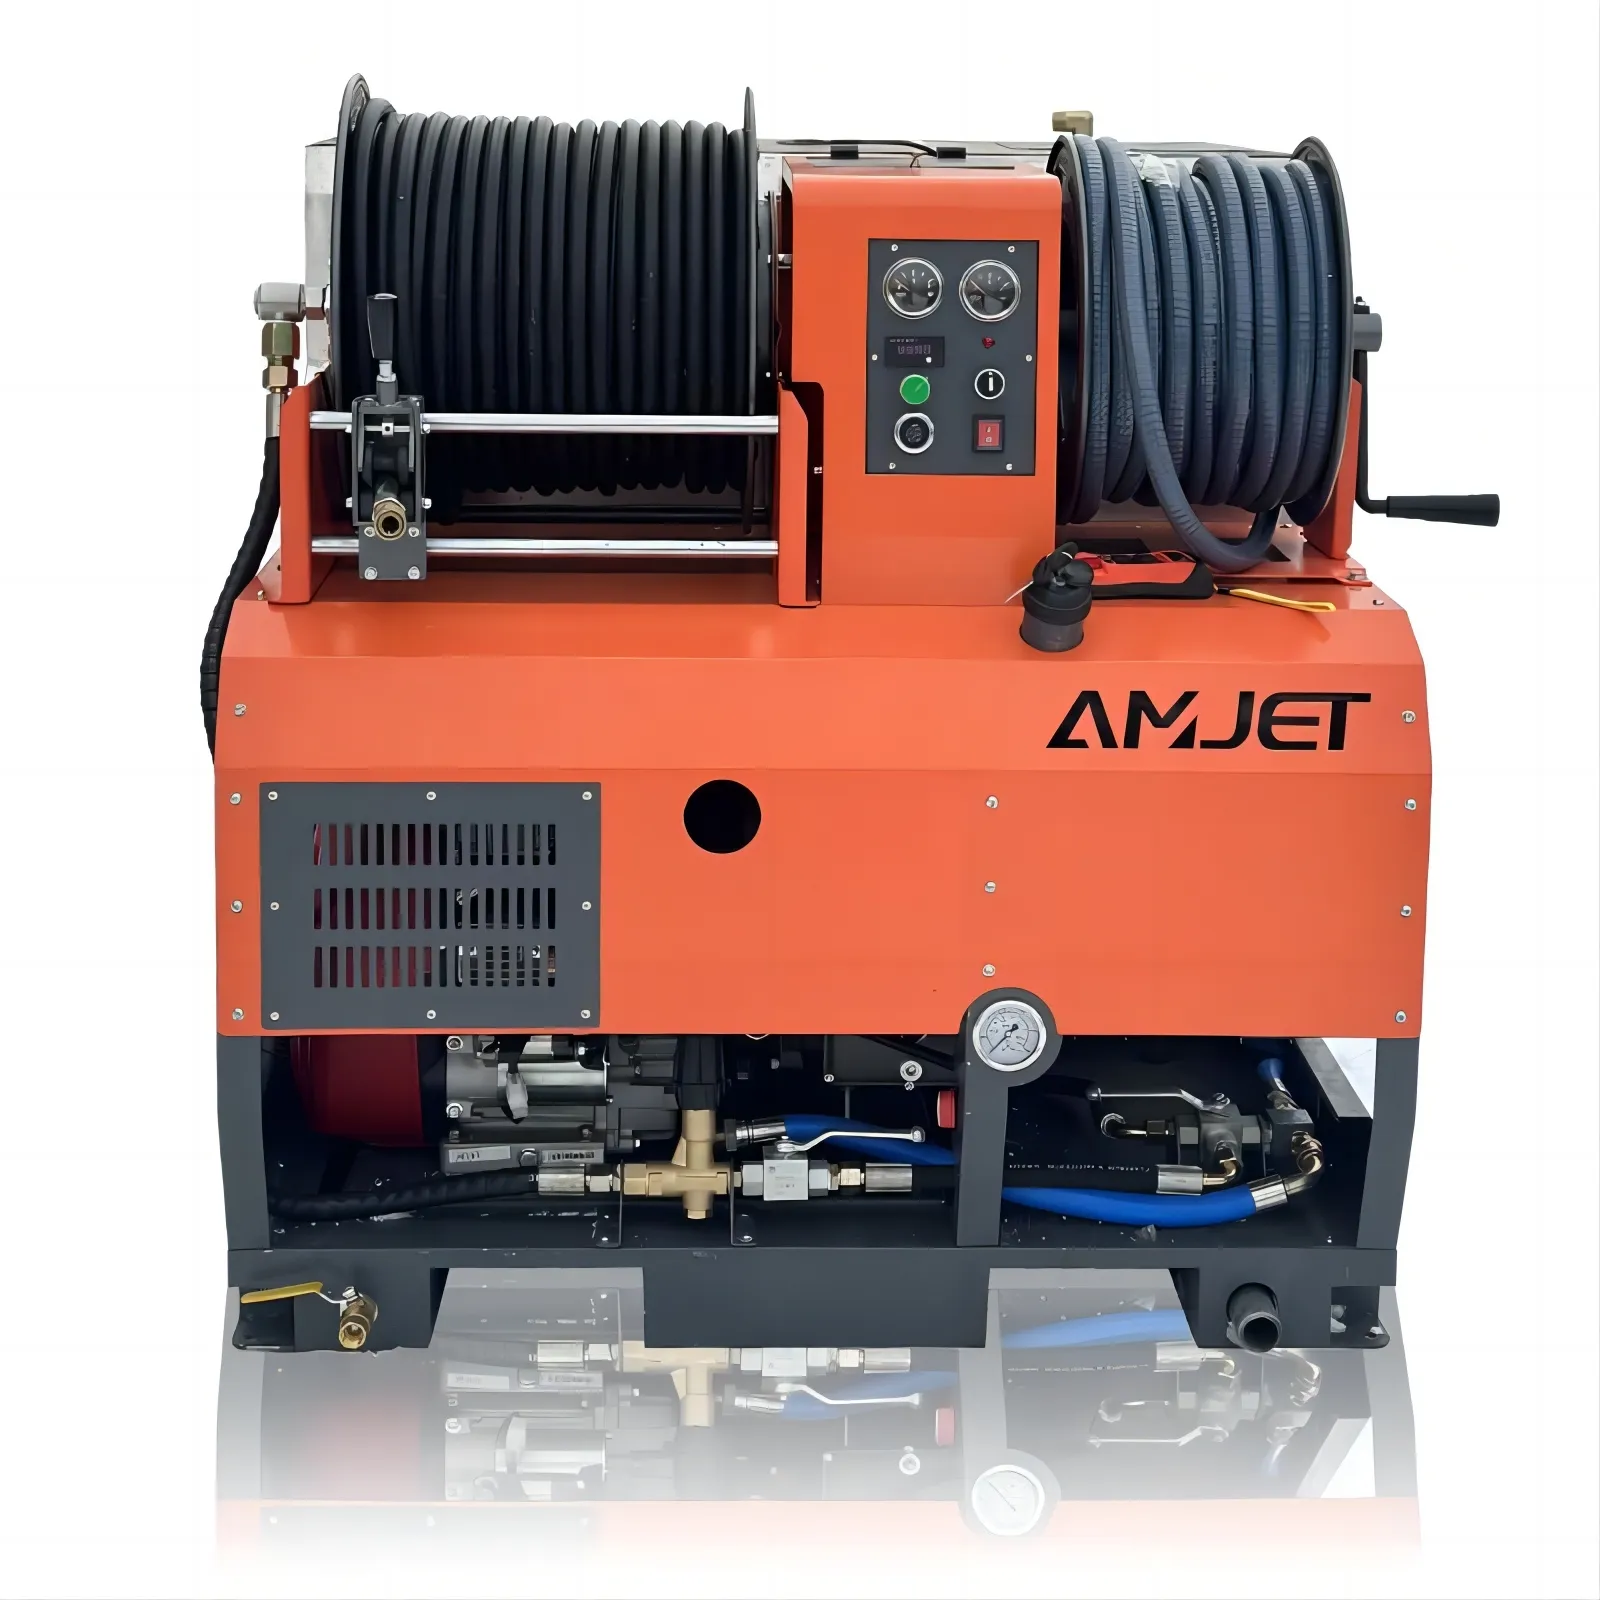 AMJET 2900psi 18gpm kablosuz OEM kanalizasyon jeti makineleri için EPA yeterlilik başlatmak amerika birleşik devletleri'ne gönderilebilir